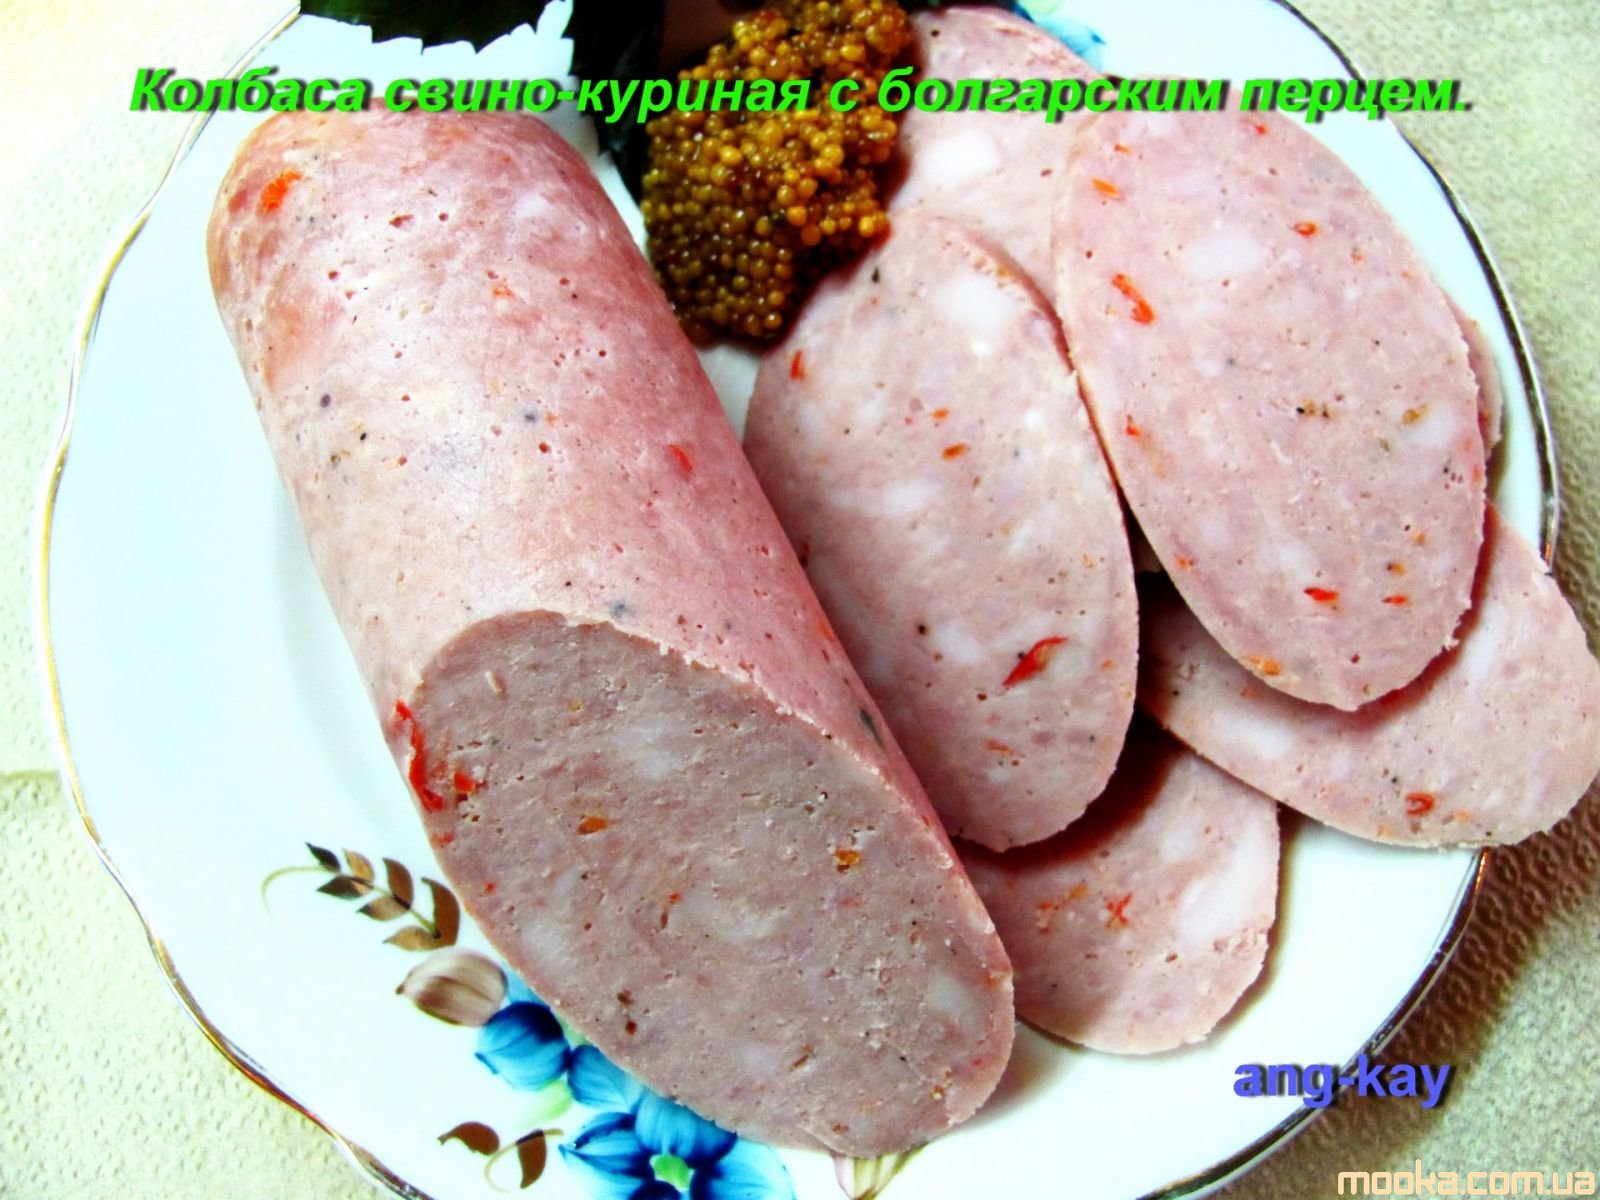 Колбаса свино-куриная с болгарским перцем.